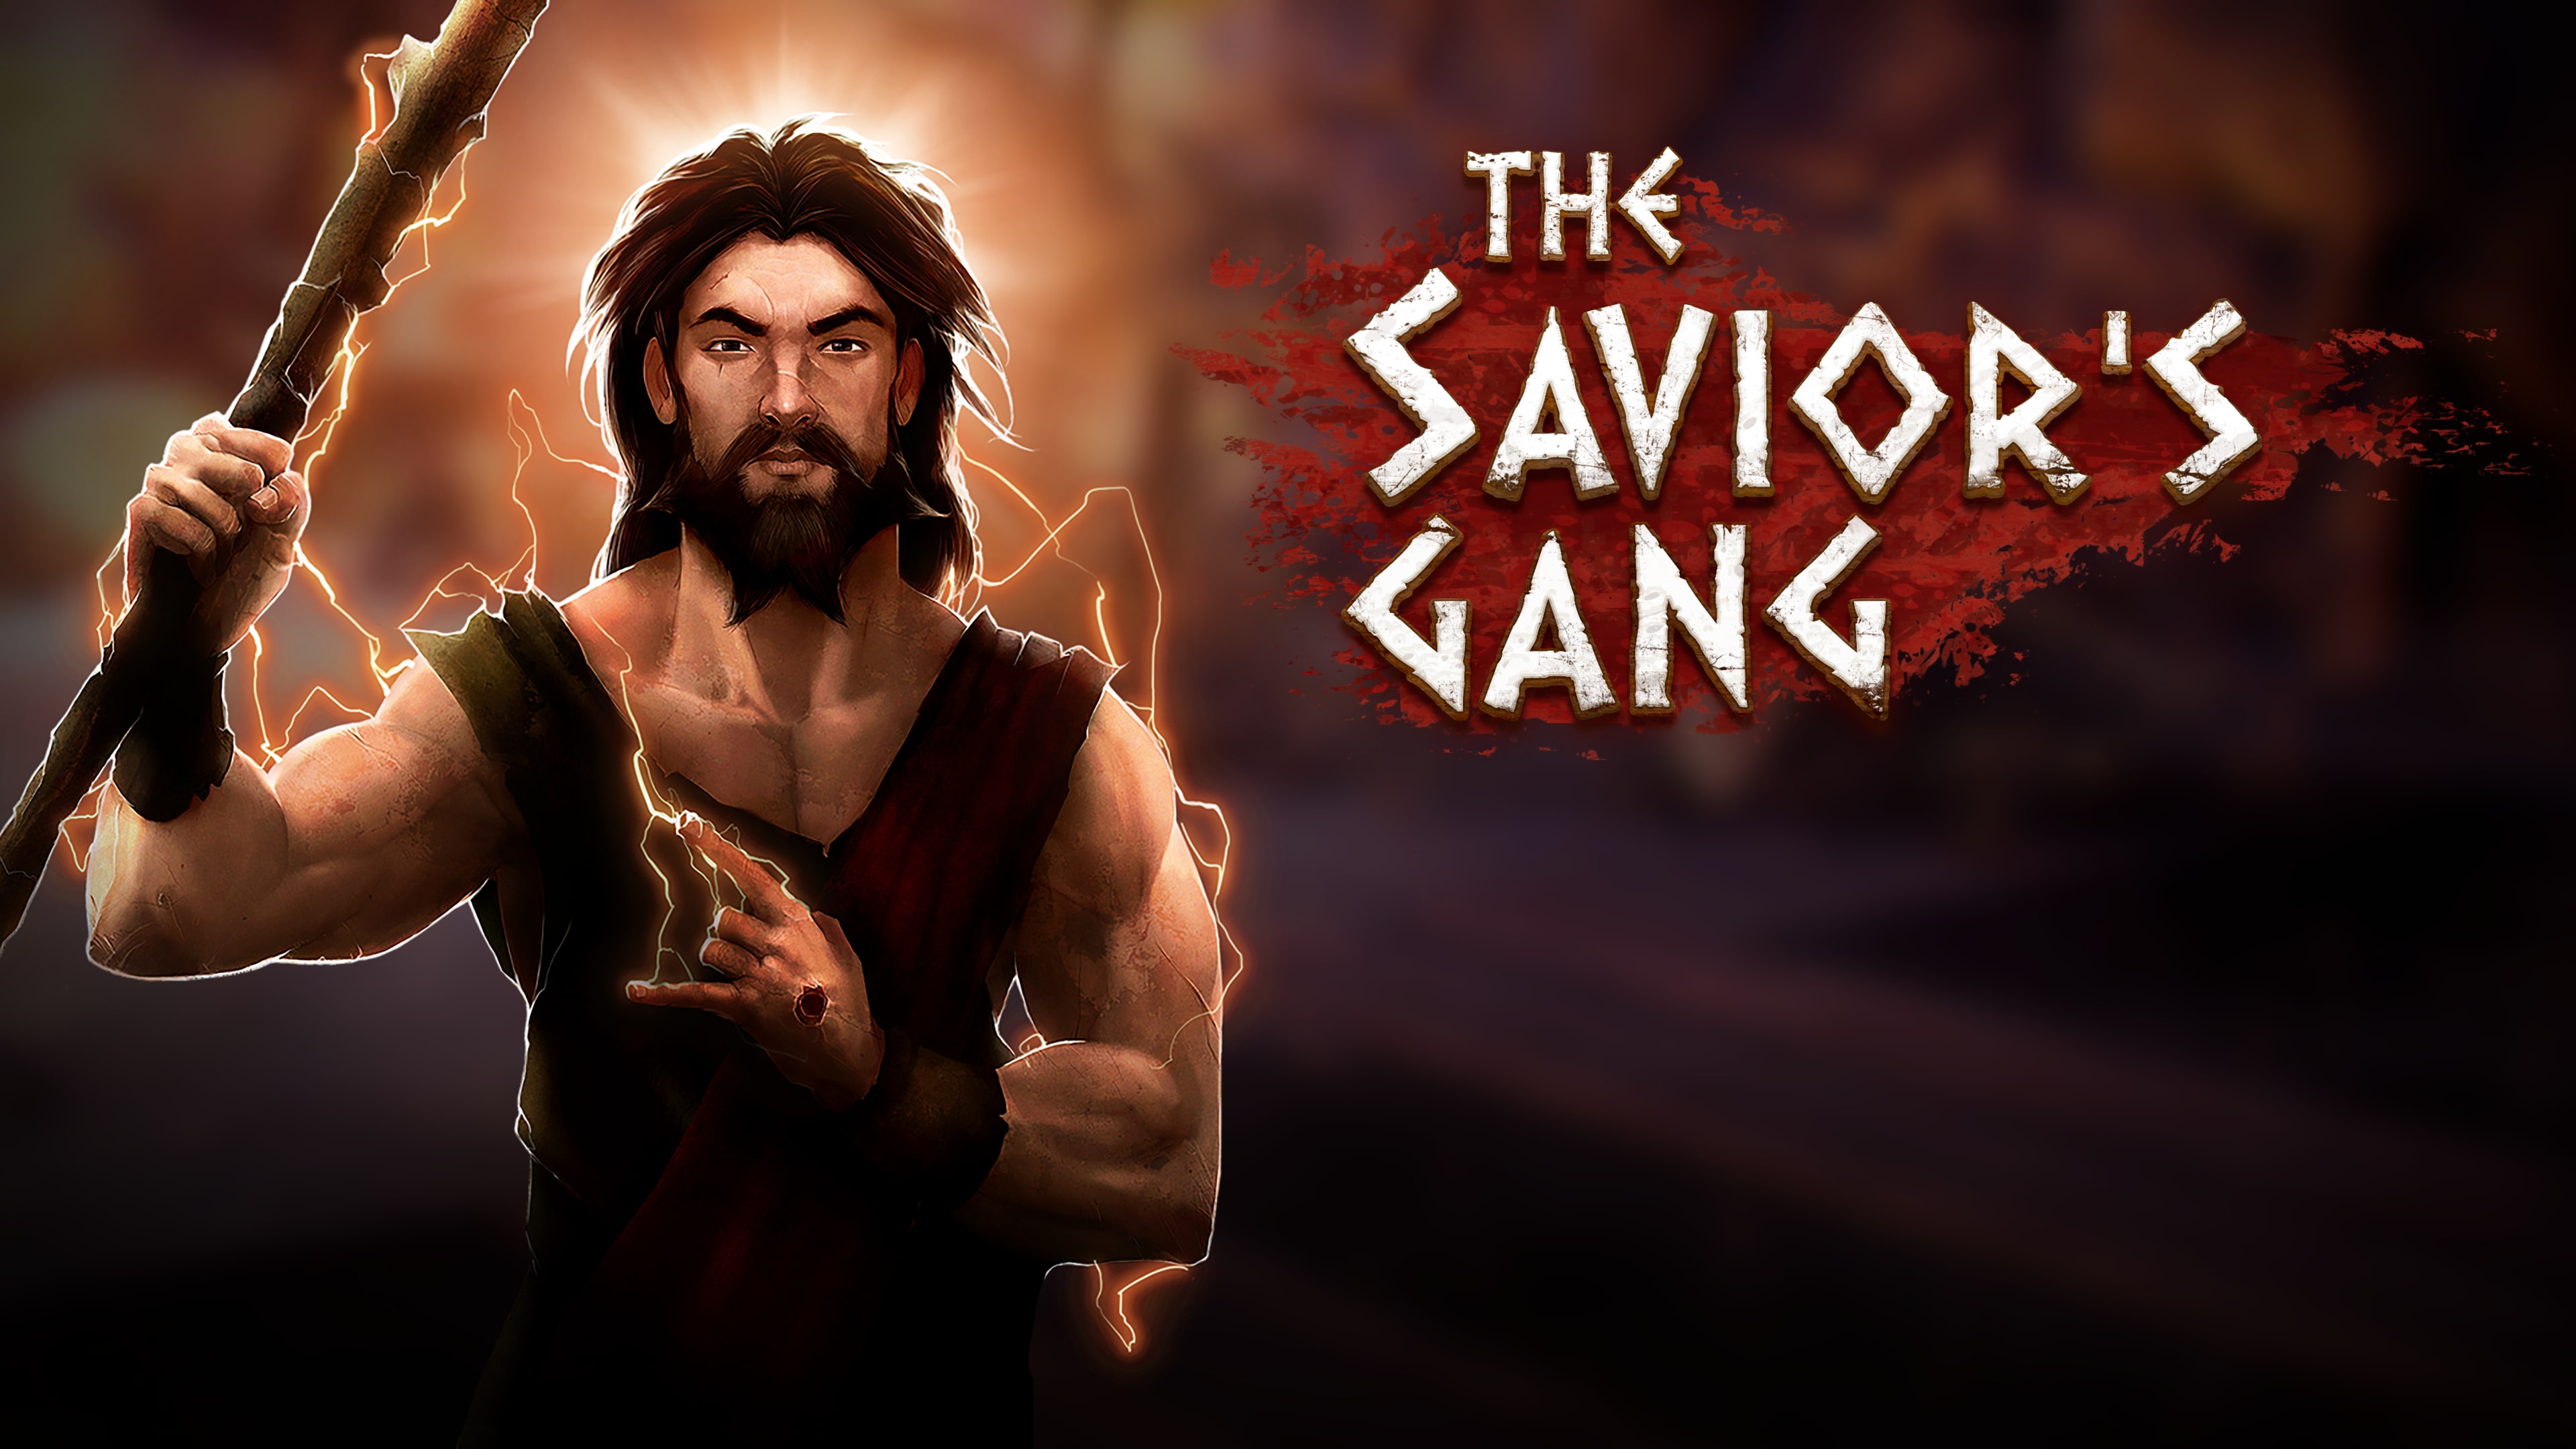 The Savior's Gang (英语)